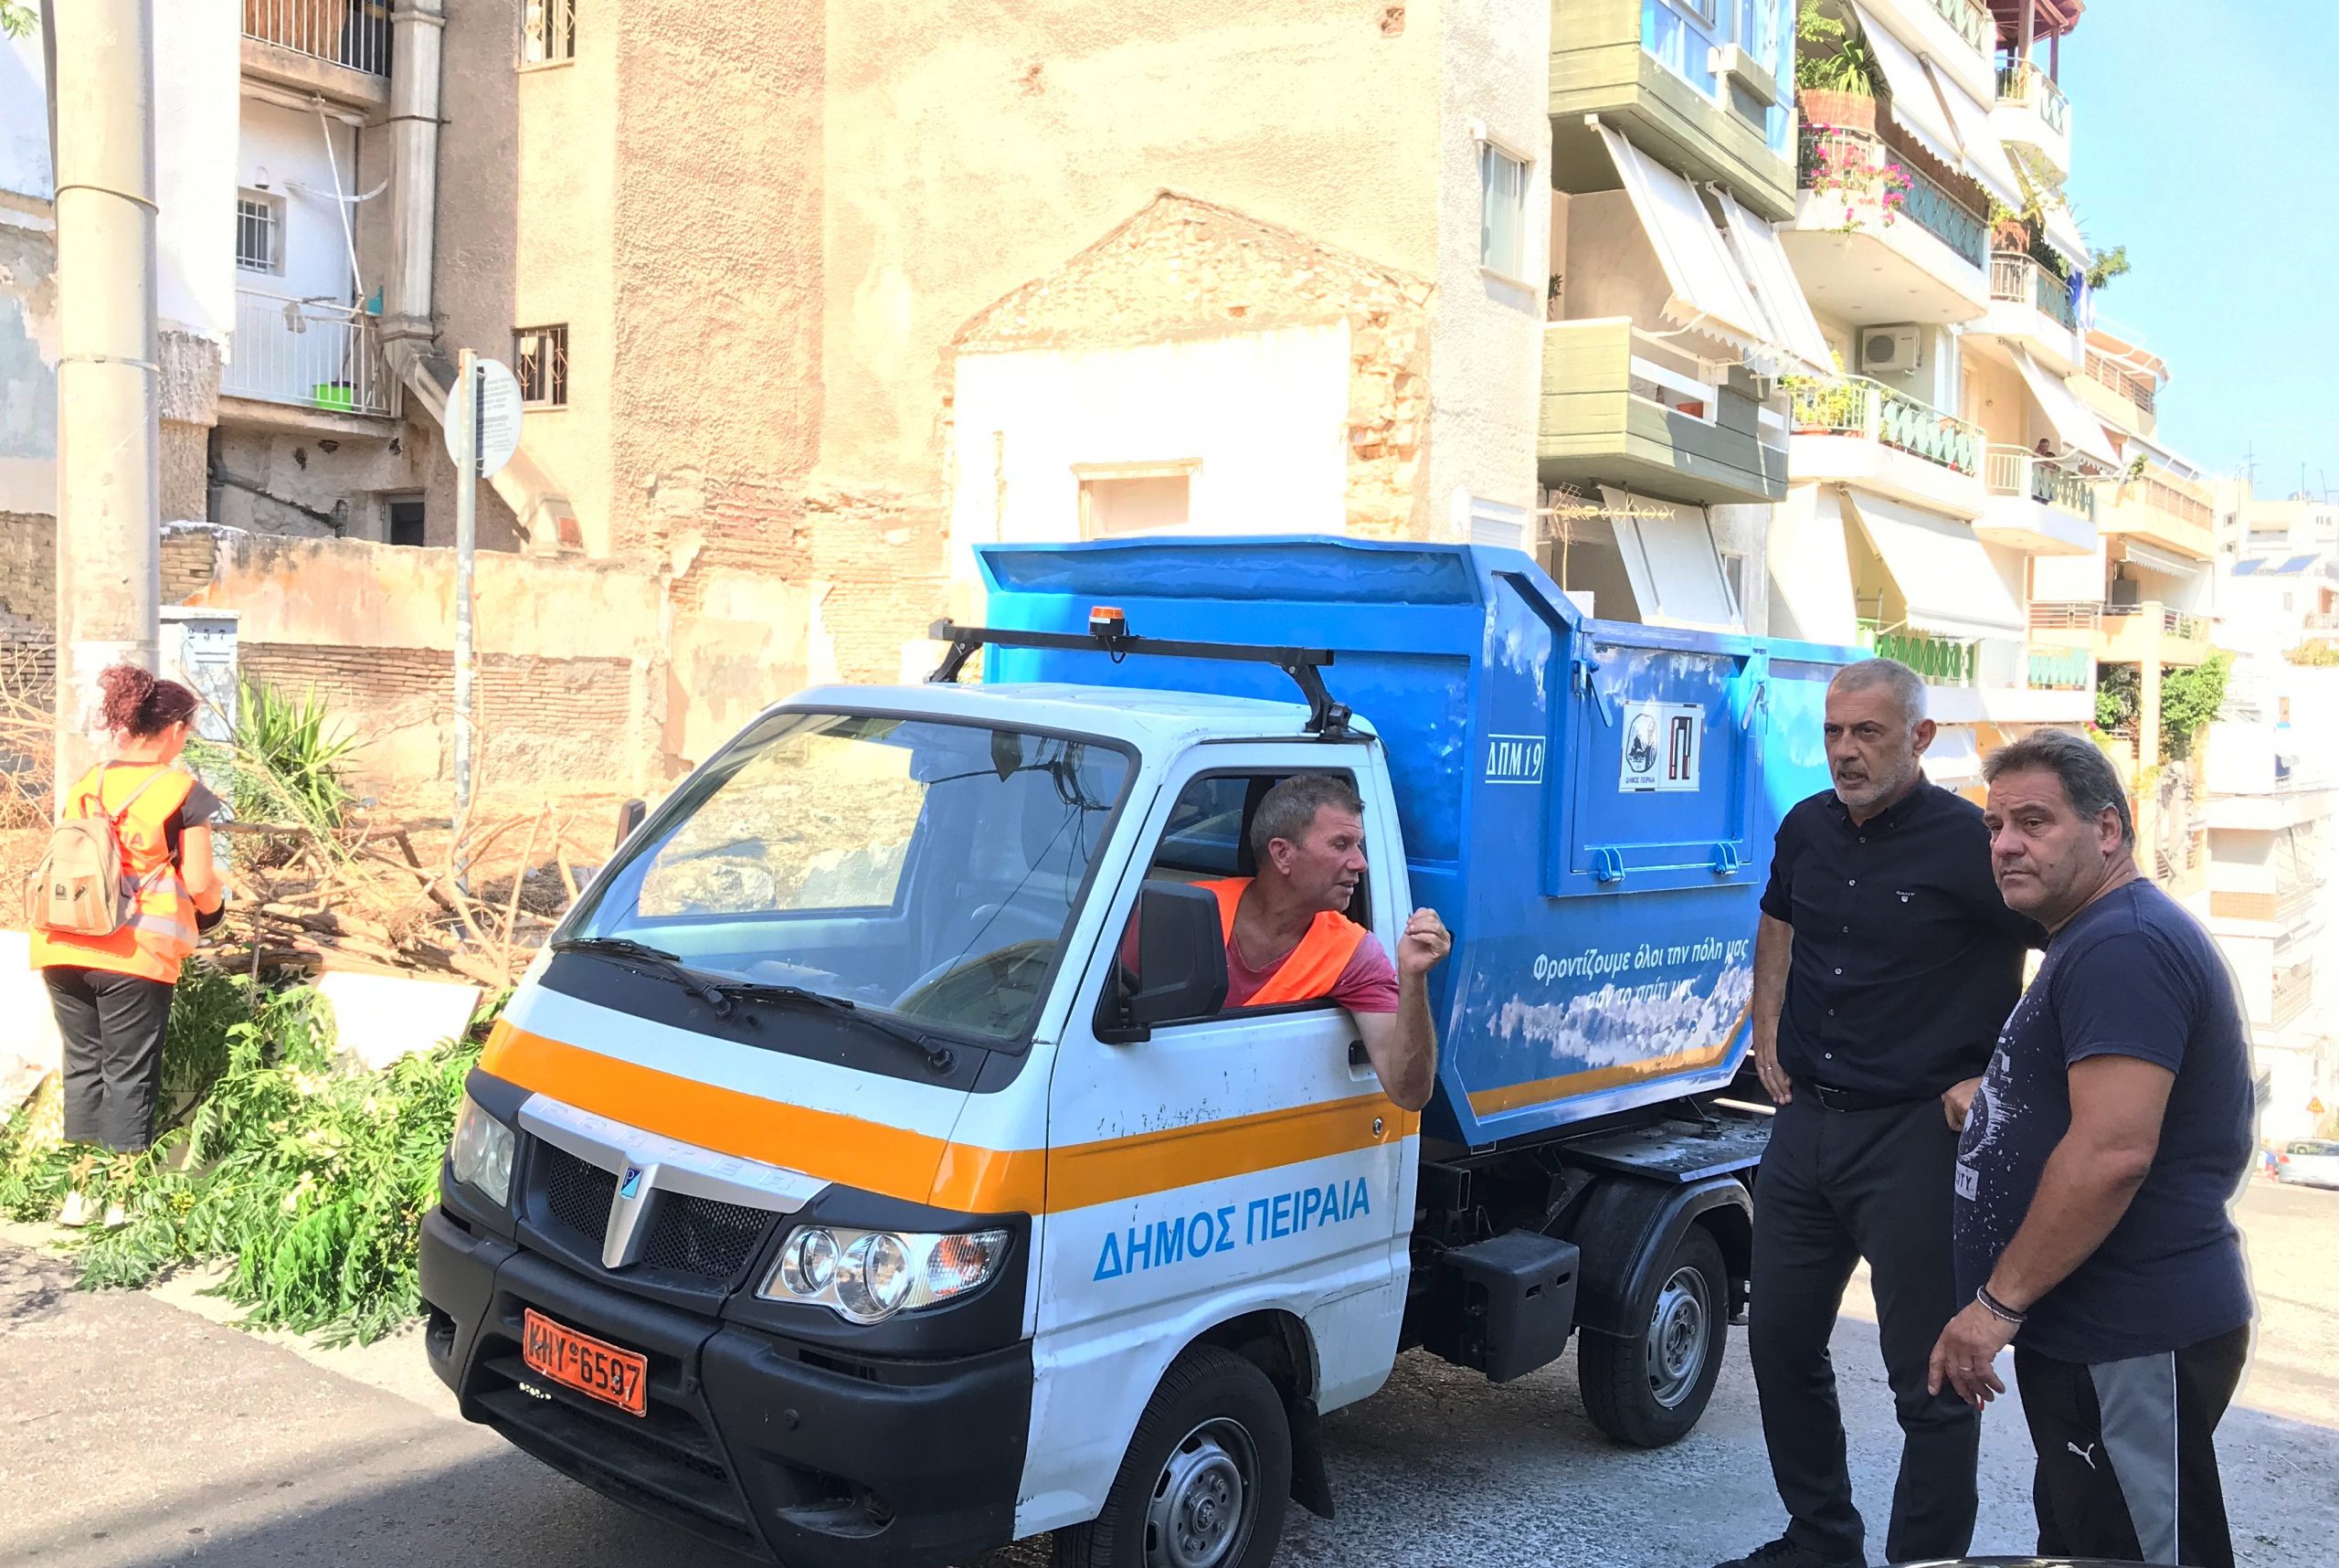 Δήμος Πειραιά: Επιχείρηση καθαρισμού στην οδό Αθανασίου Διάκου, στη Β΄ Δημοτική Κοινότητα (video)